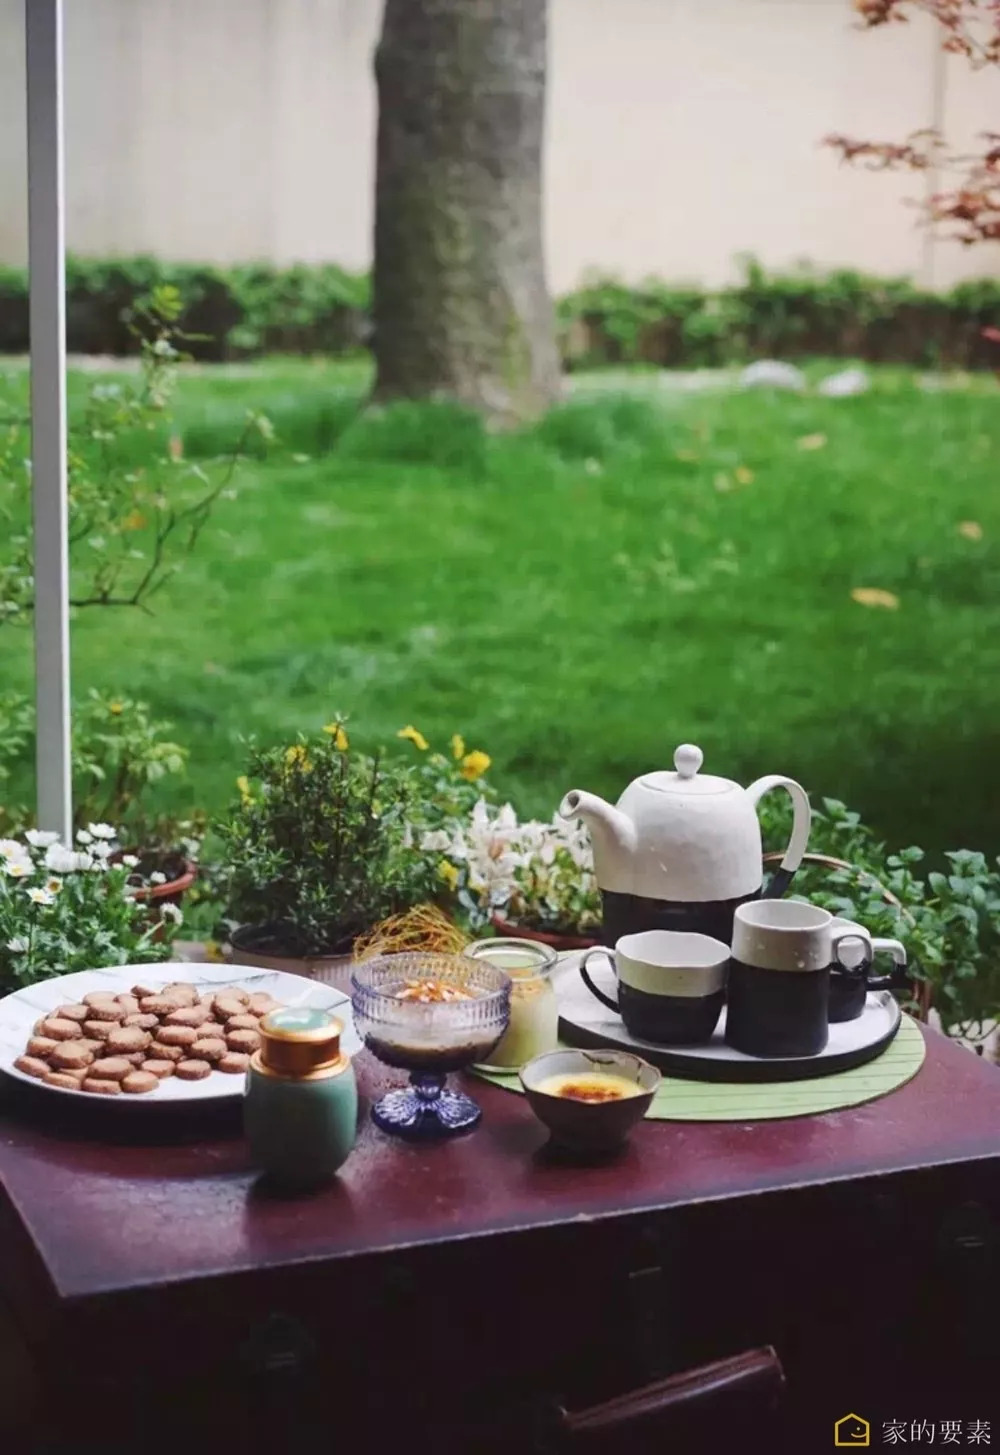 闲暇的时候,在院子喝茶,静享明媚的午后时光.